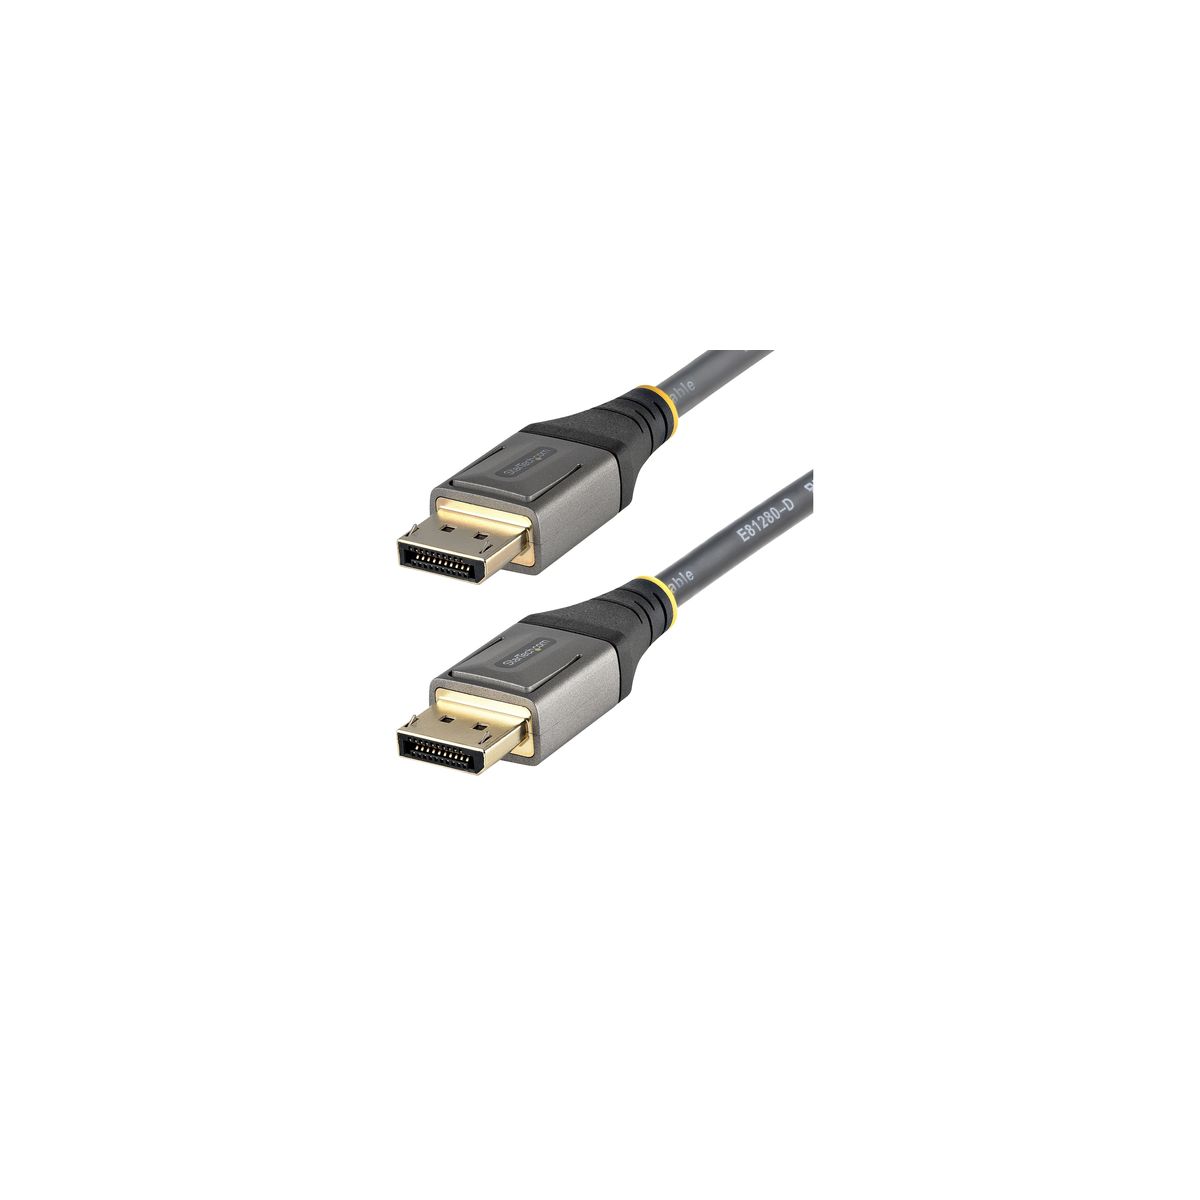 StarTech.com Cable de 1m DisplayPort 1.4 Certificado VESA - 8K de